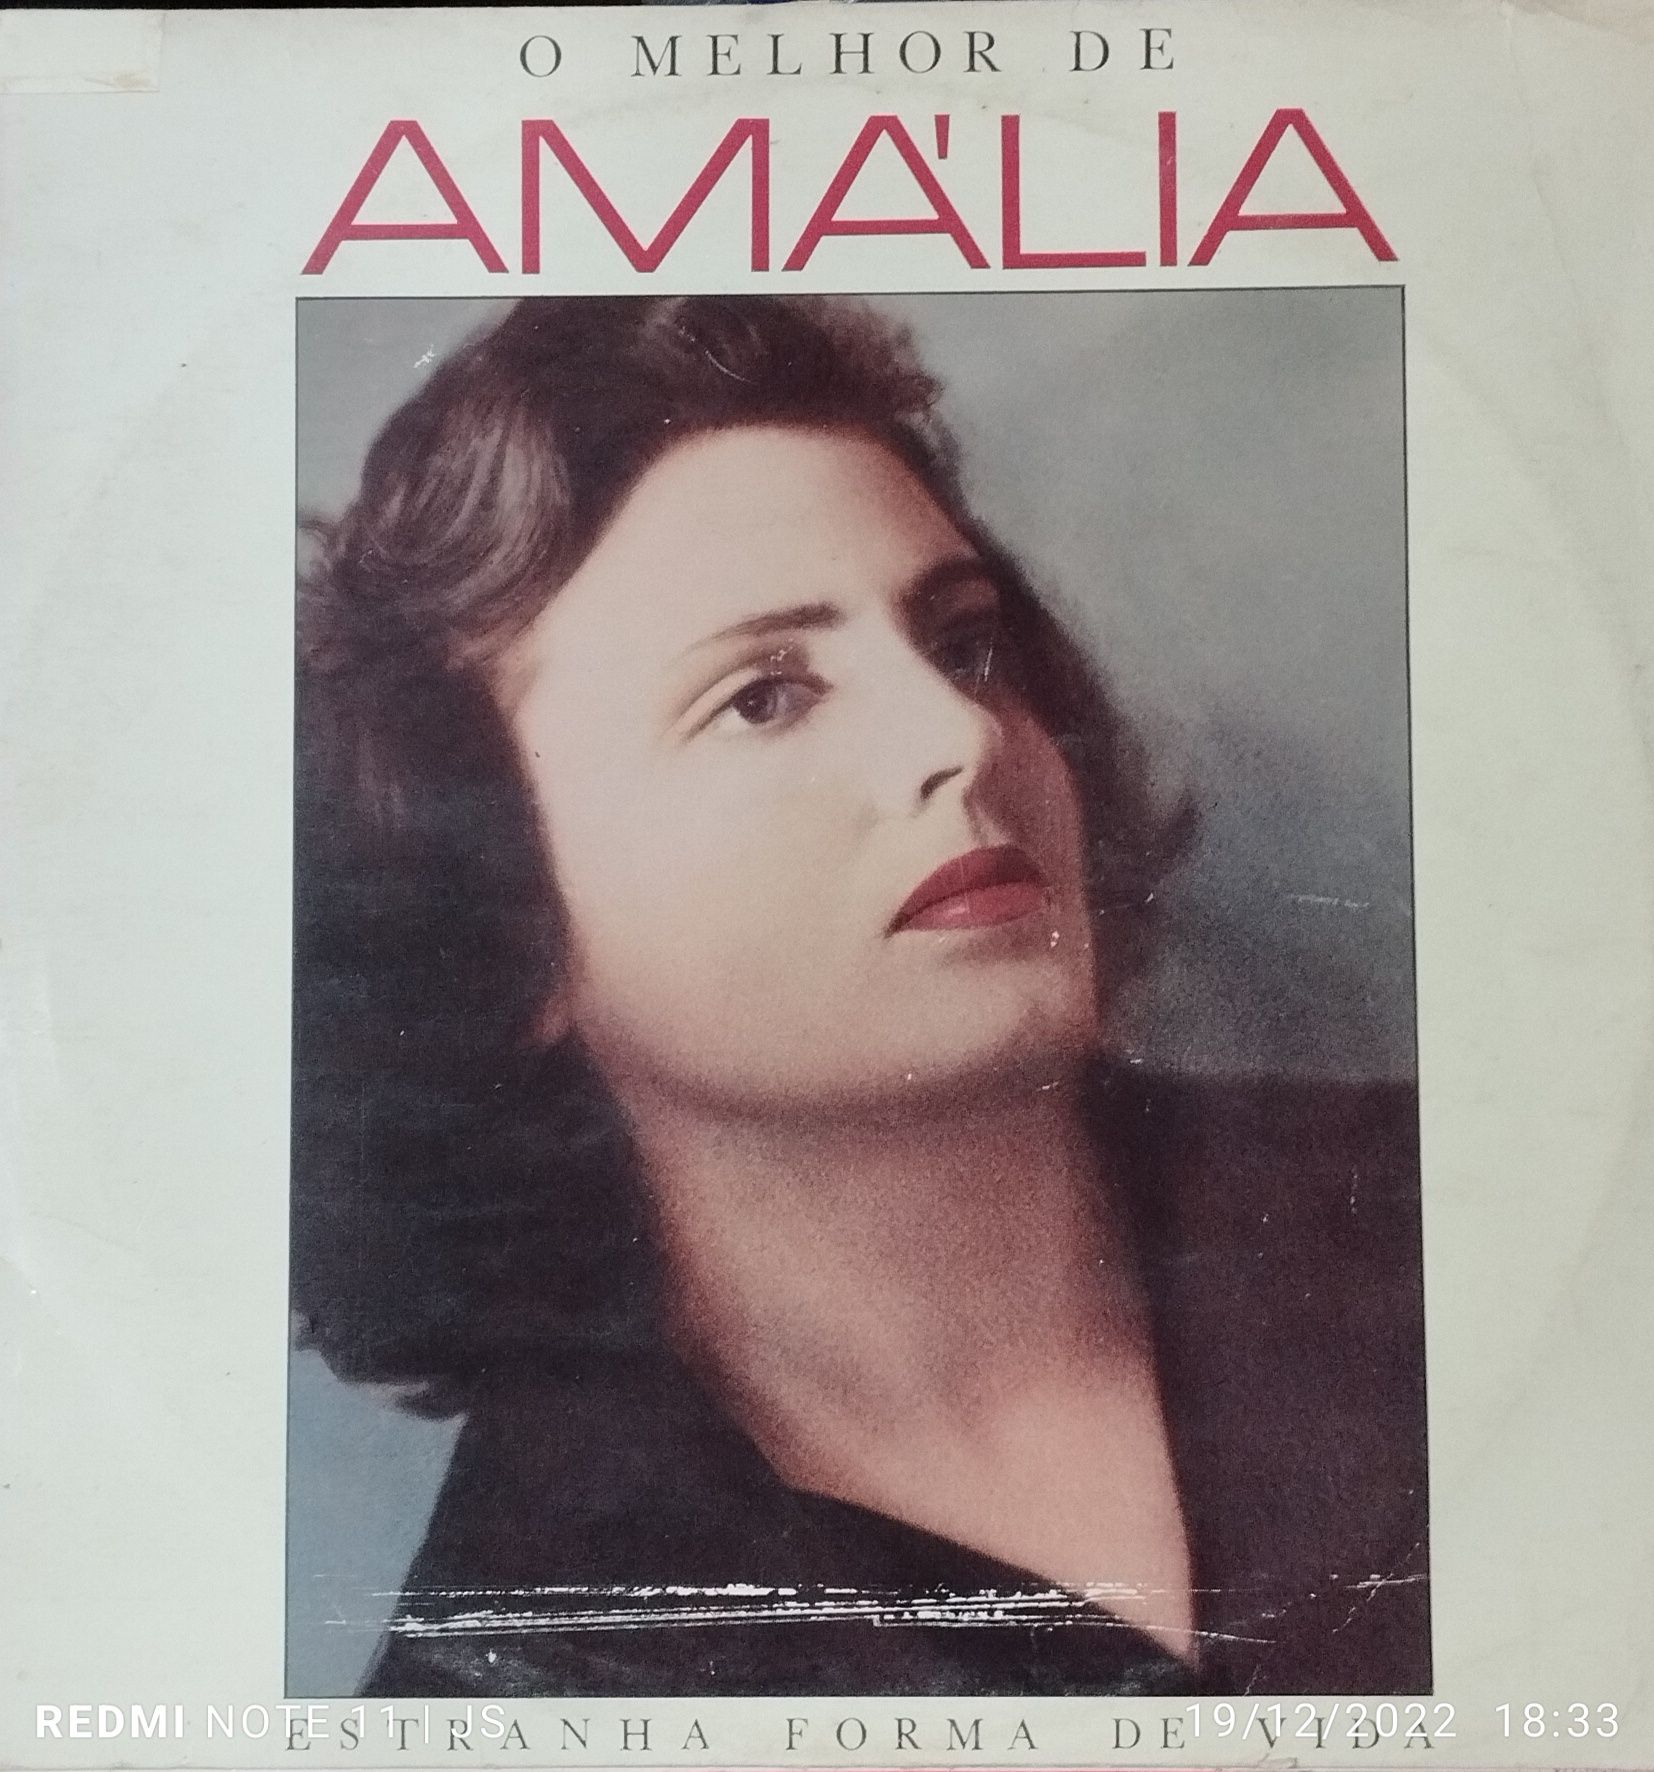 Discos vinil Amália Rodrigues a partir de 10€